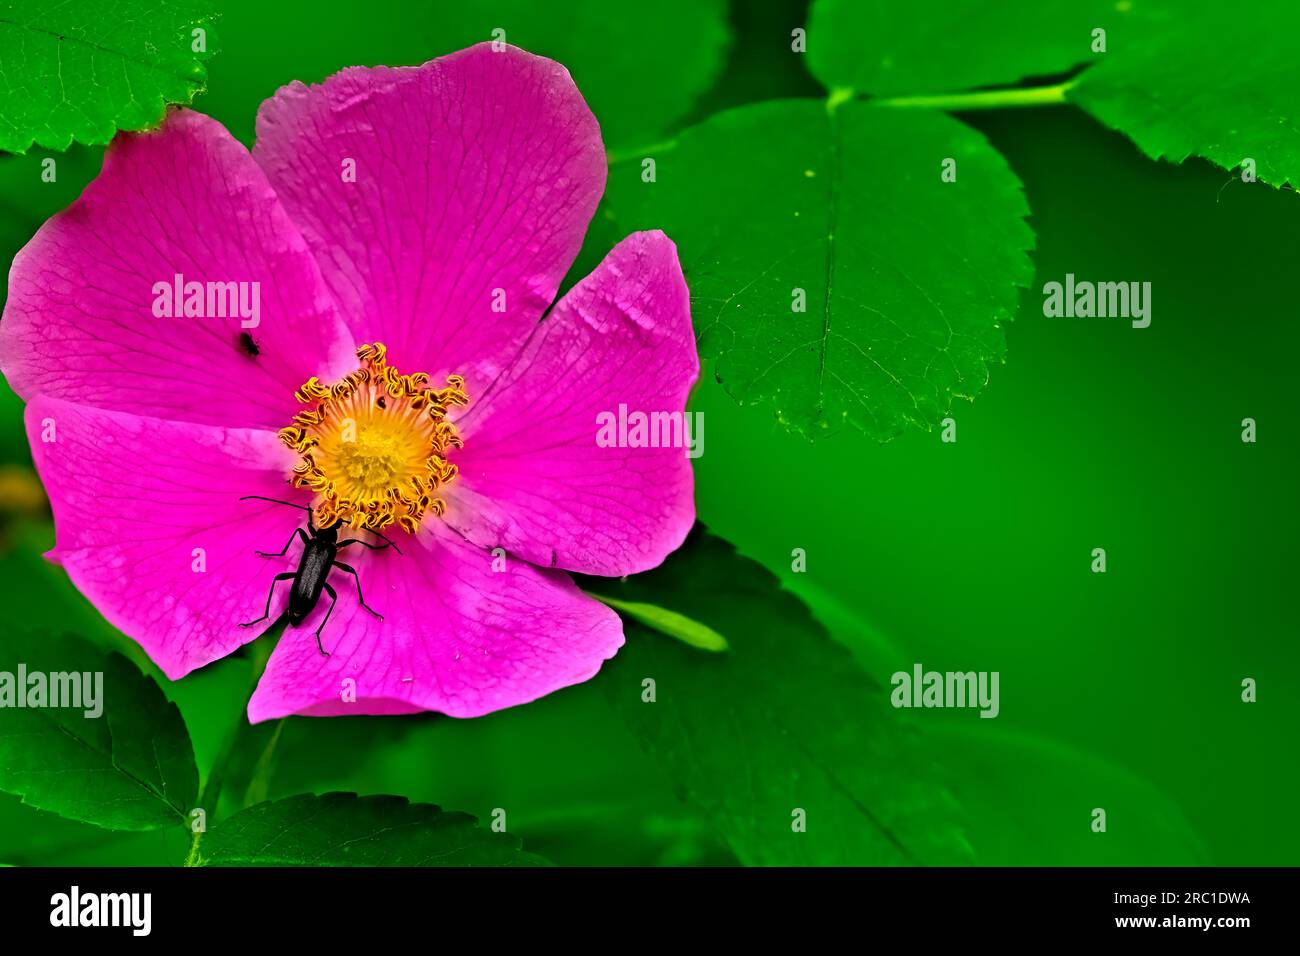 Nahaufnahme einer hübschen wilden Rosenblüte, Rosa acicularis, mit einem schwarzen Käfer auf grünem Blatthintergrund. Stockfoto